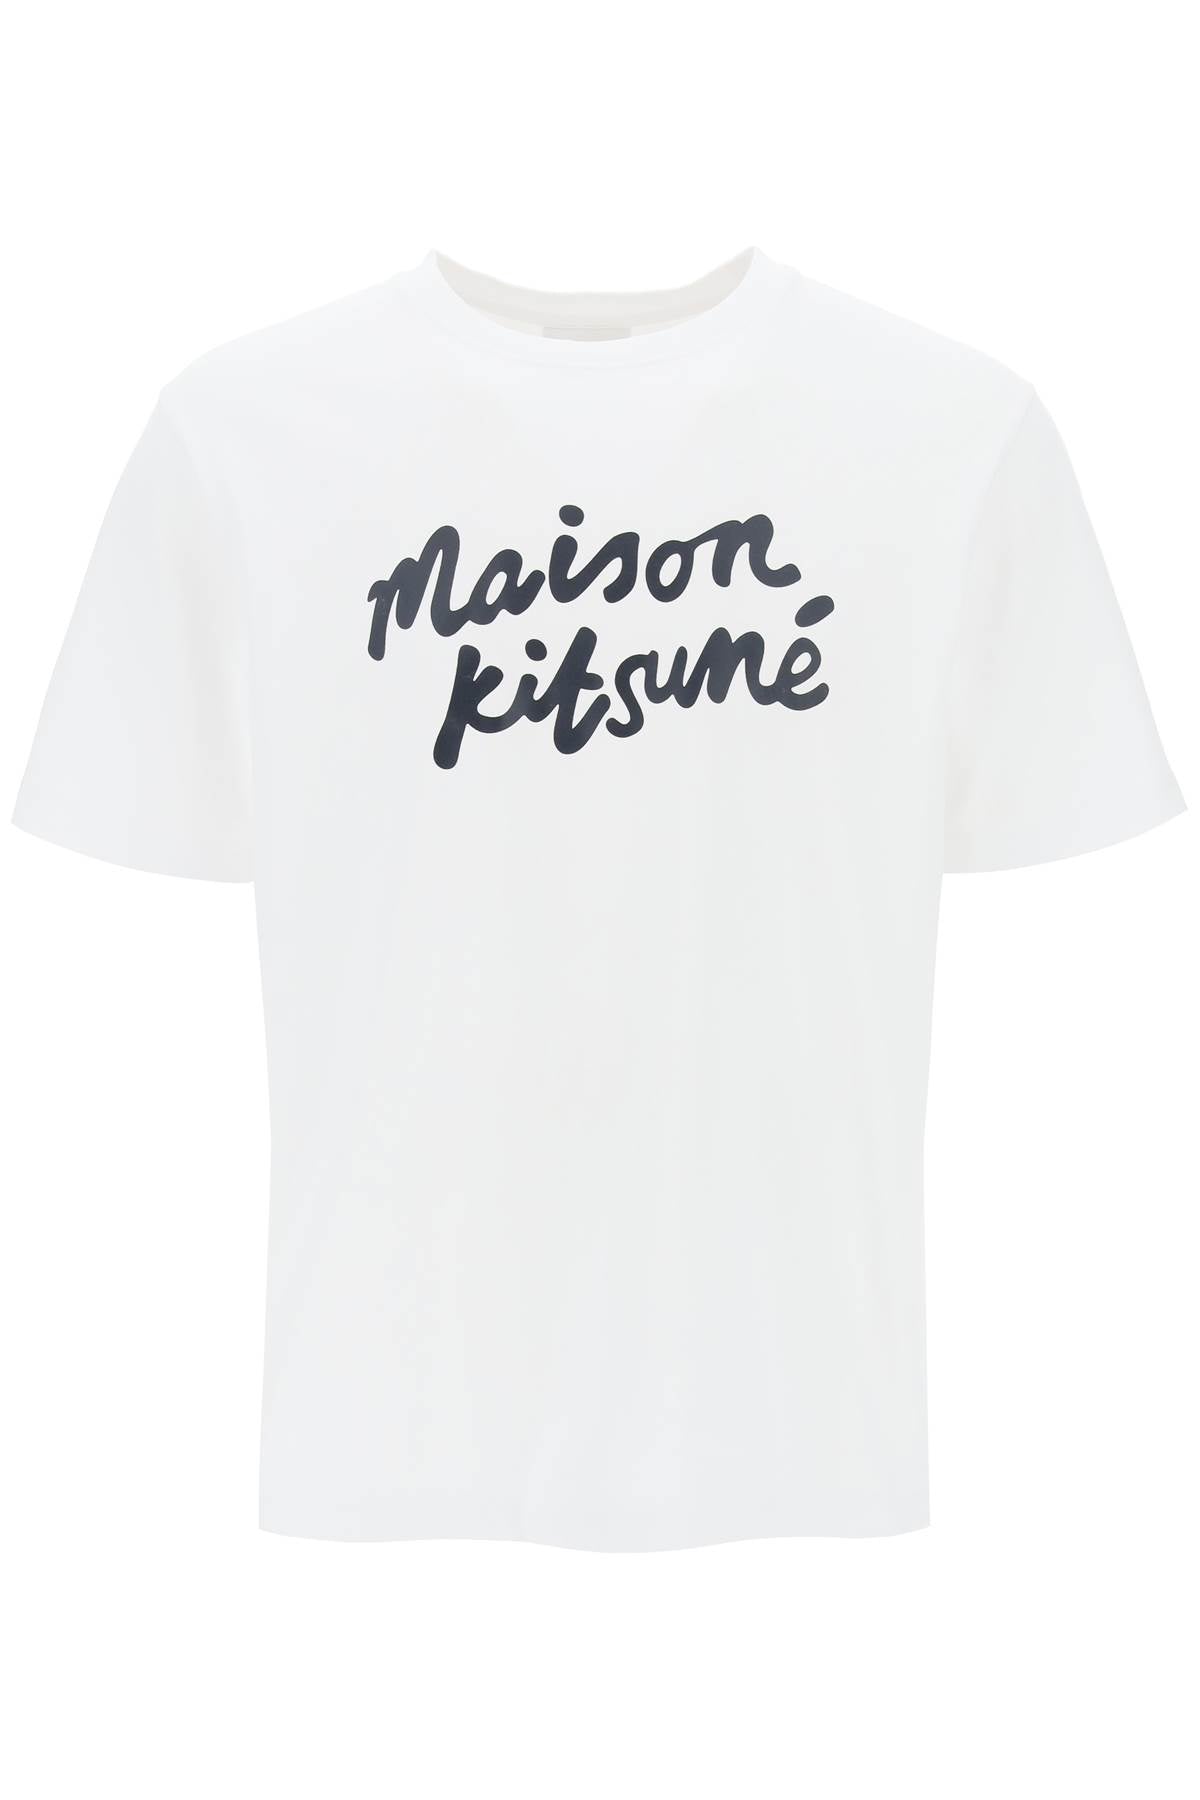 Maison kitsune t-shirt with logo in handwriting-0